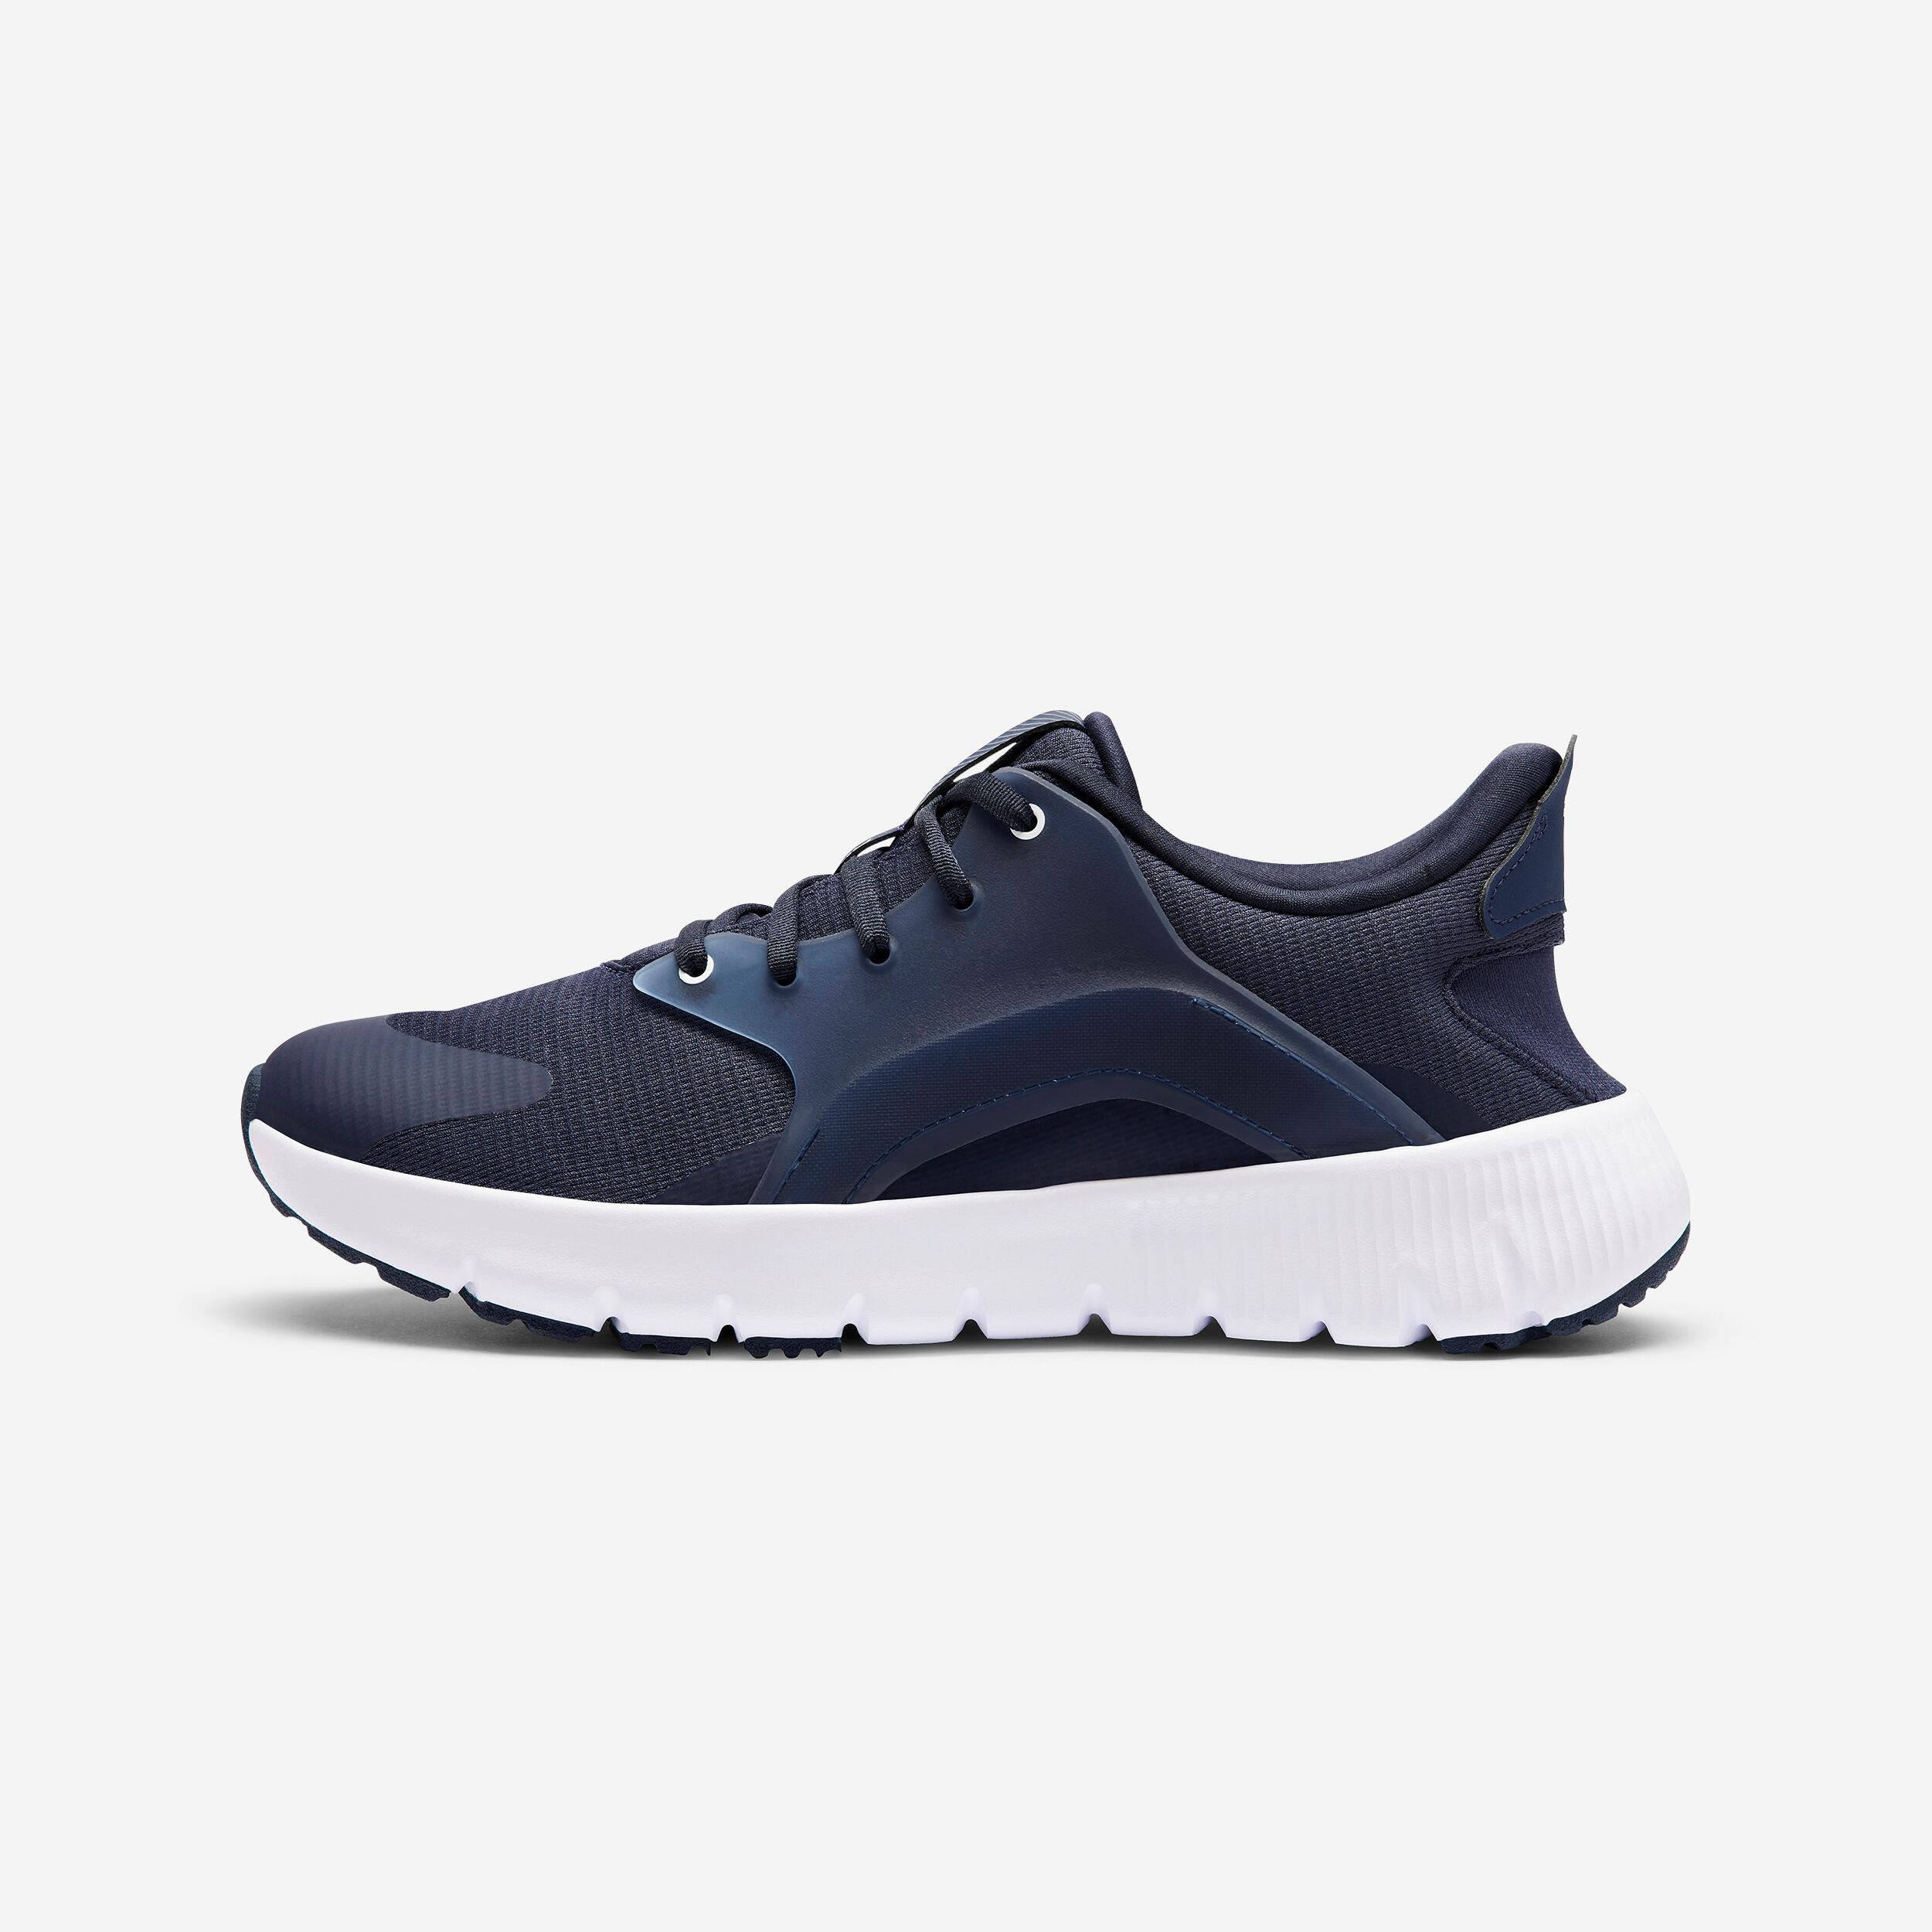 Kalenji Men's Standard Walking Shoes Sw500.1 - Blue